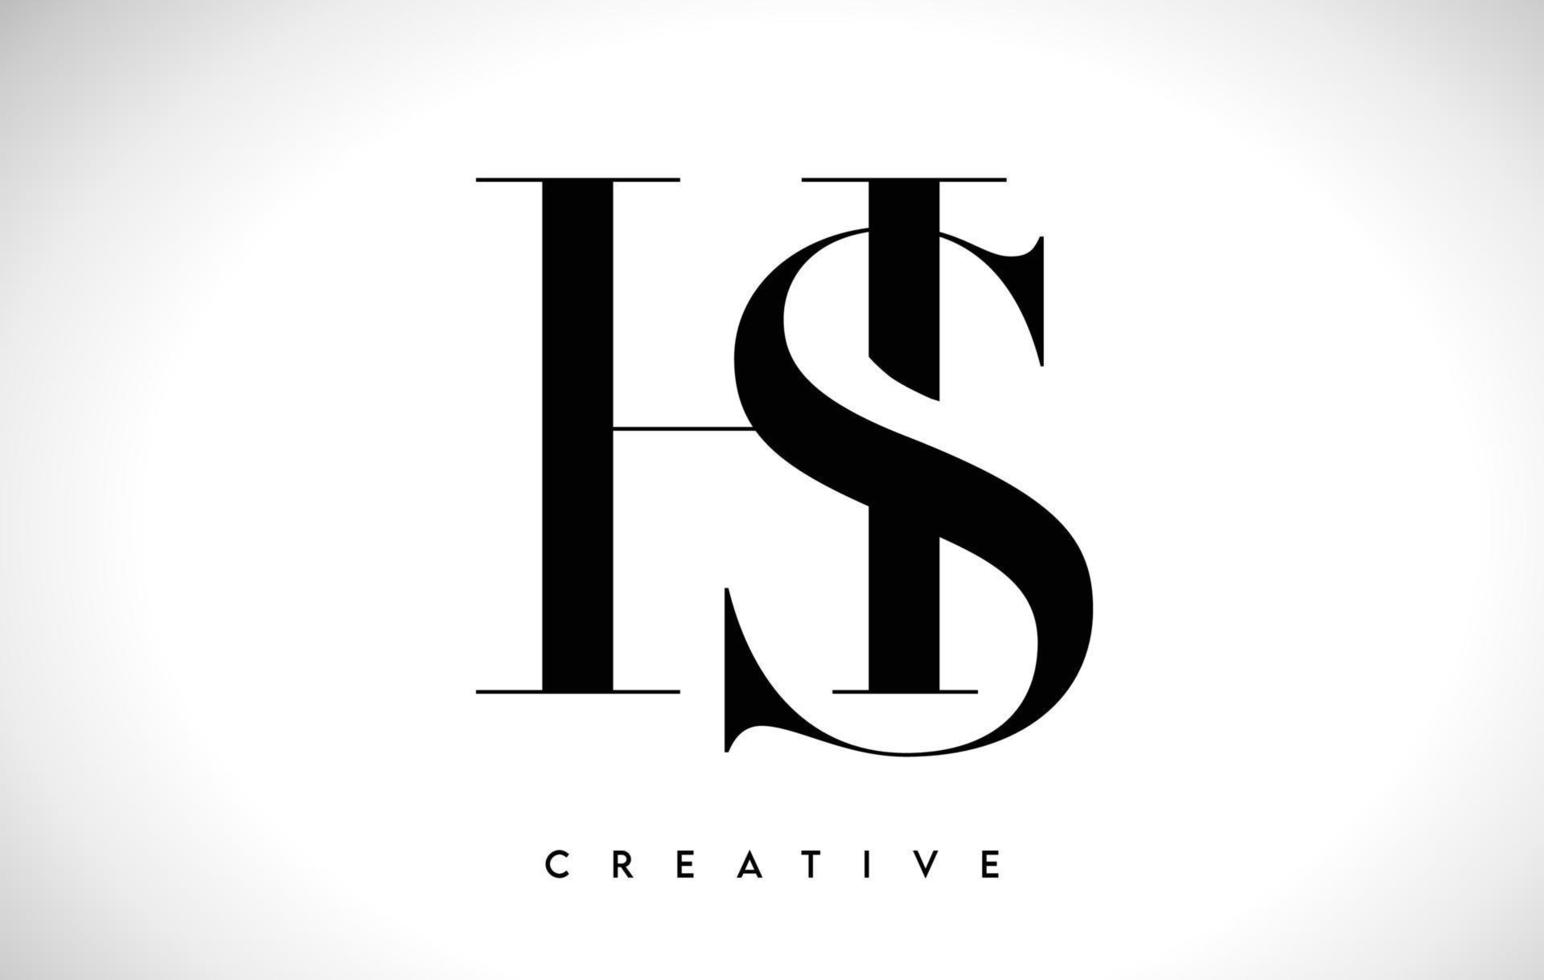 hs design de logotipo de carta artística com fonte serif em cores preto e branco ilustração vetorial vetor